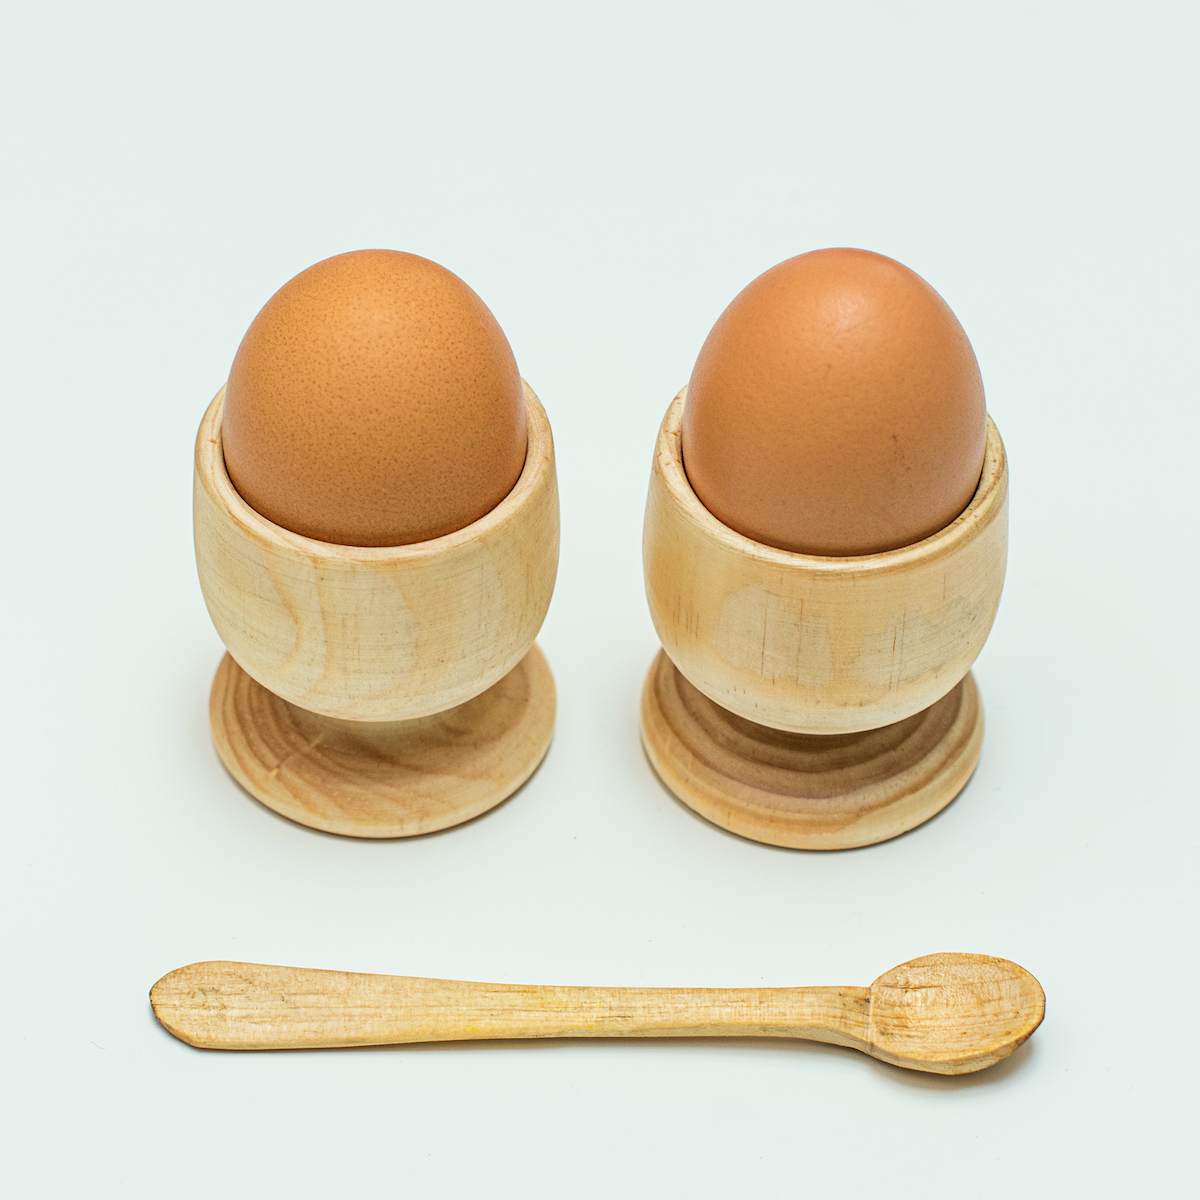 Timber egg cup set